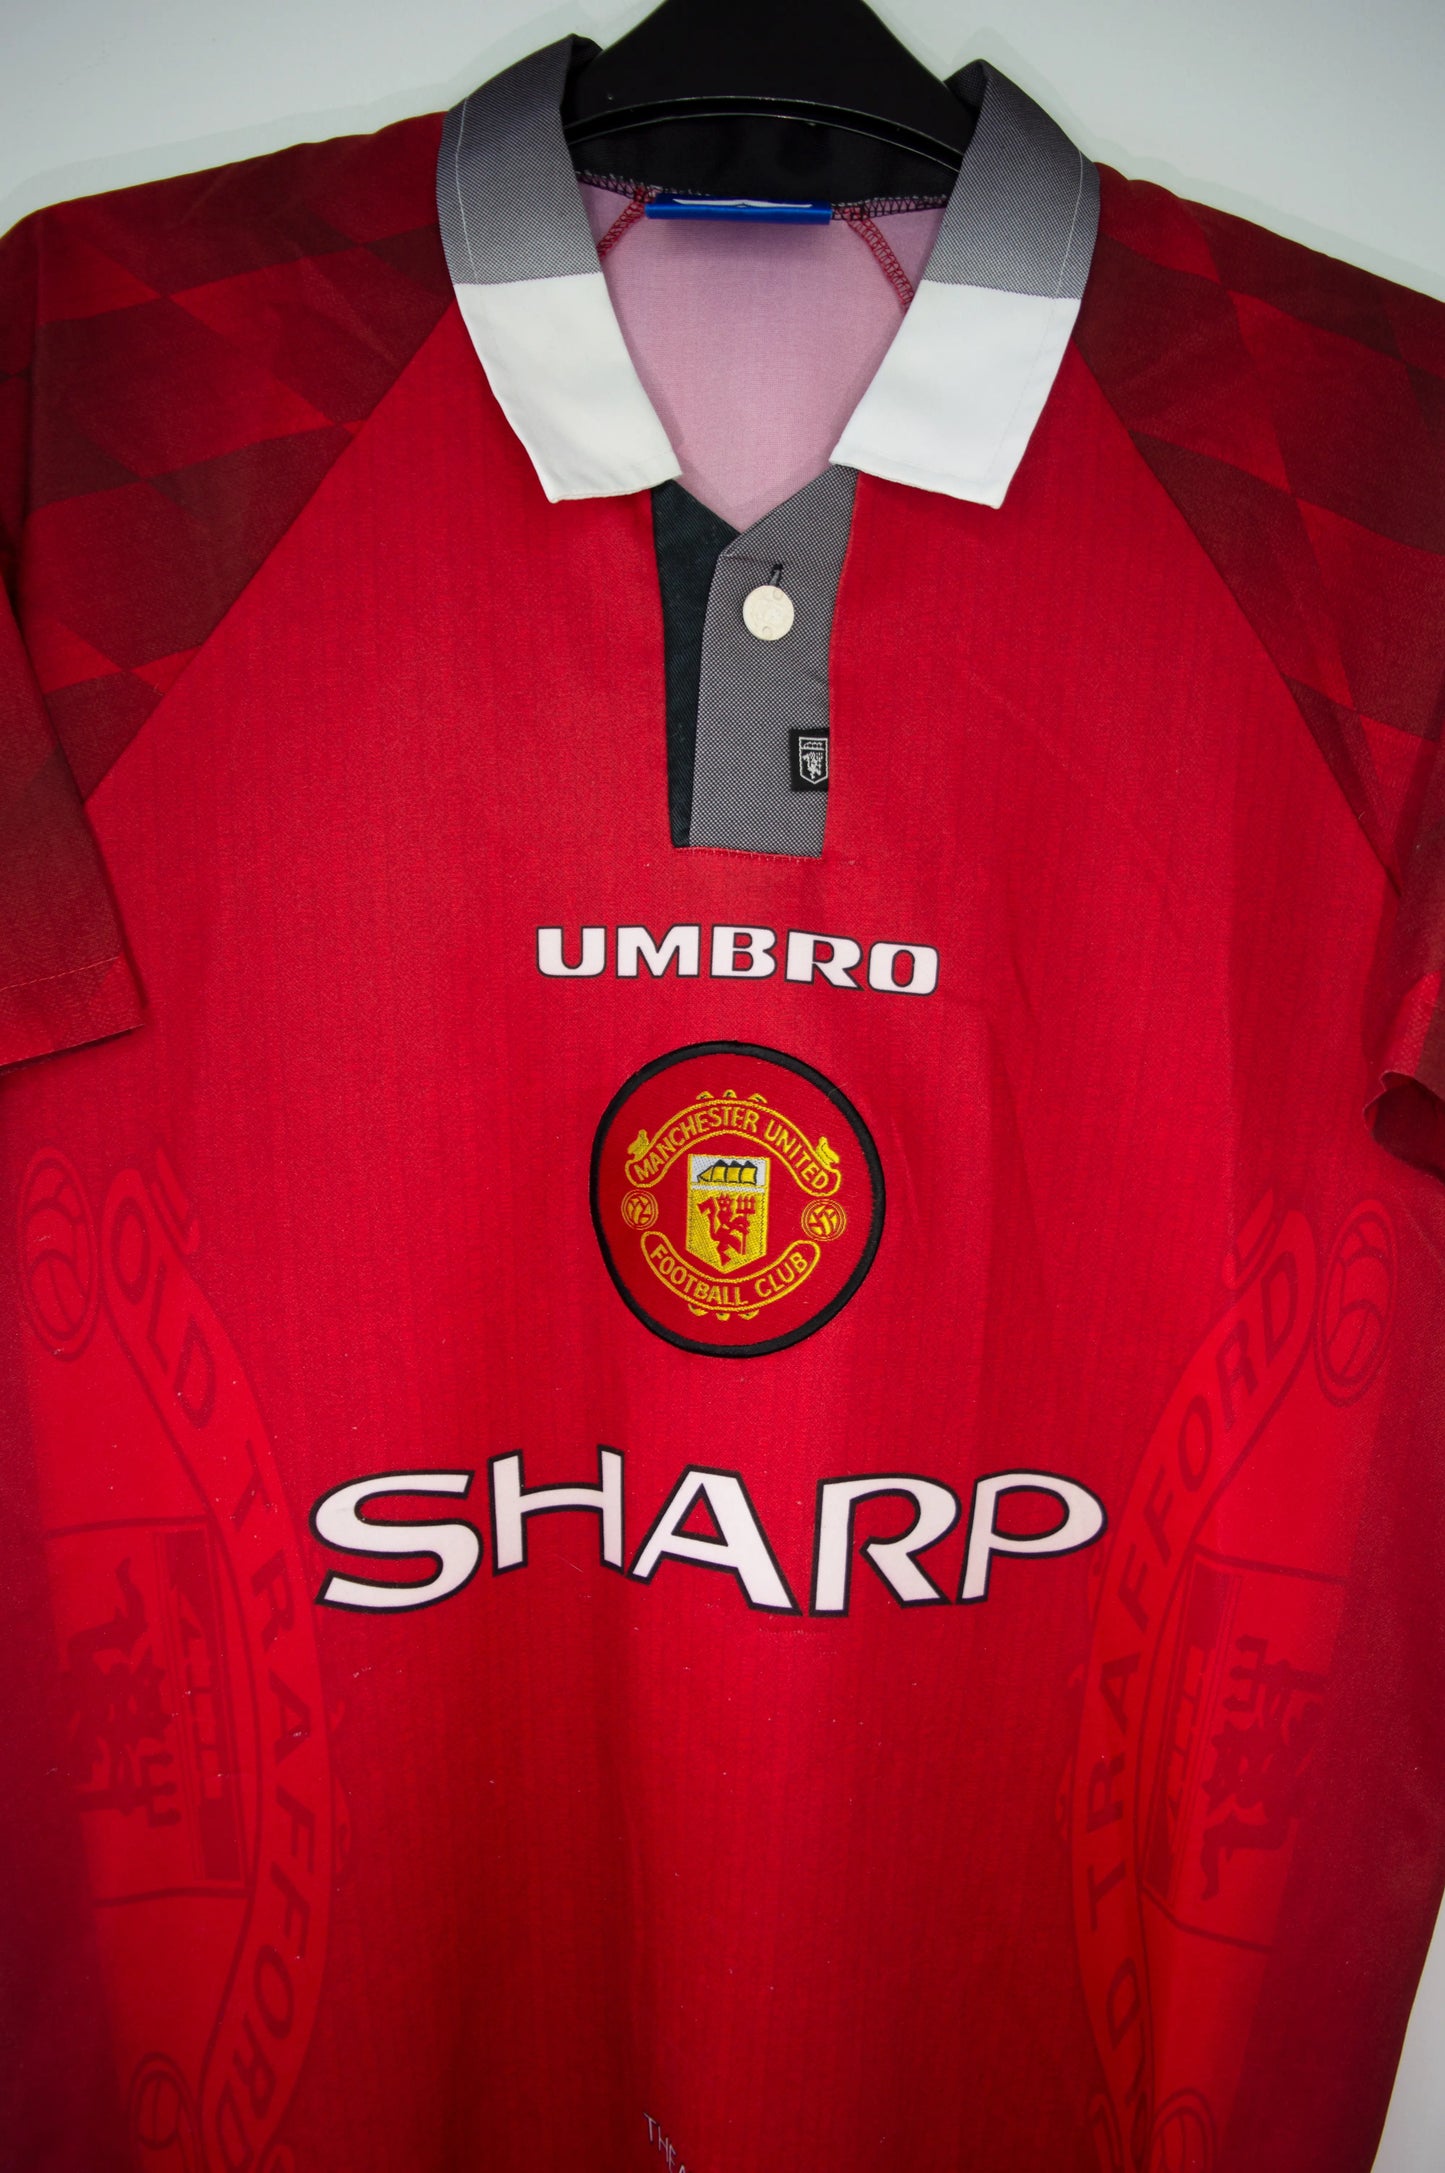 Maillot domicile de Manchester United de la saison 1996-1998. On peut retrouver l'équipementier umbro et le sponsor sharp